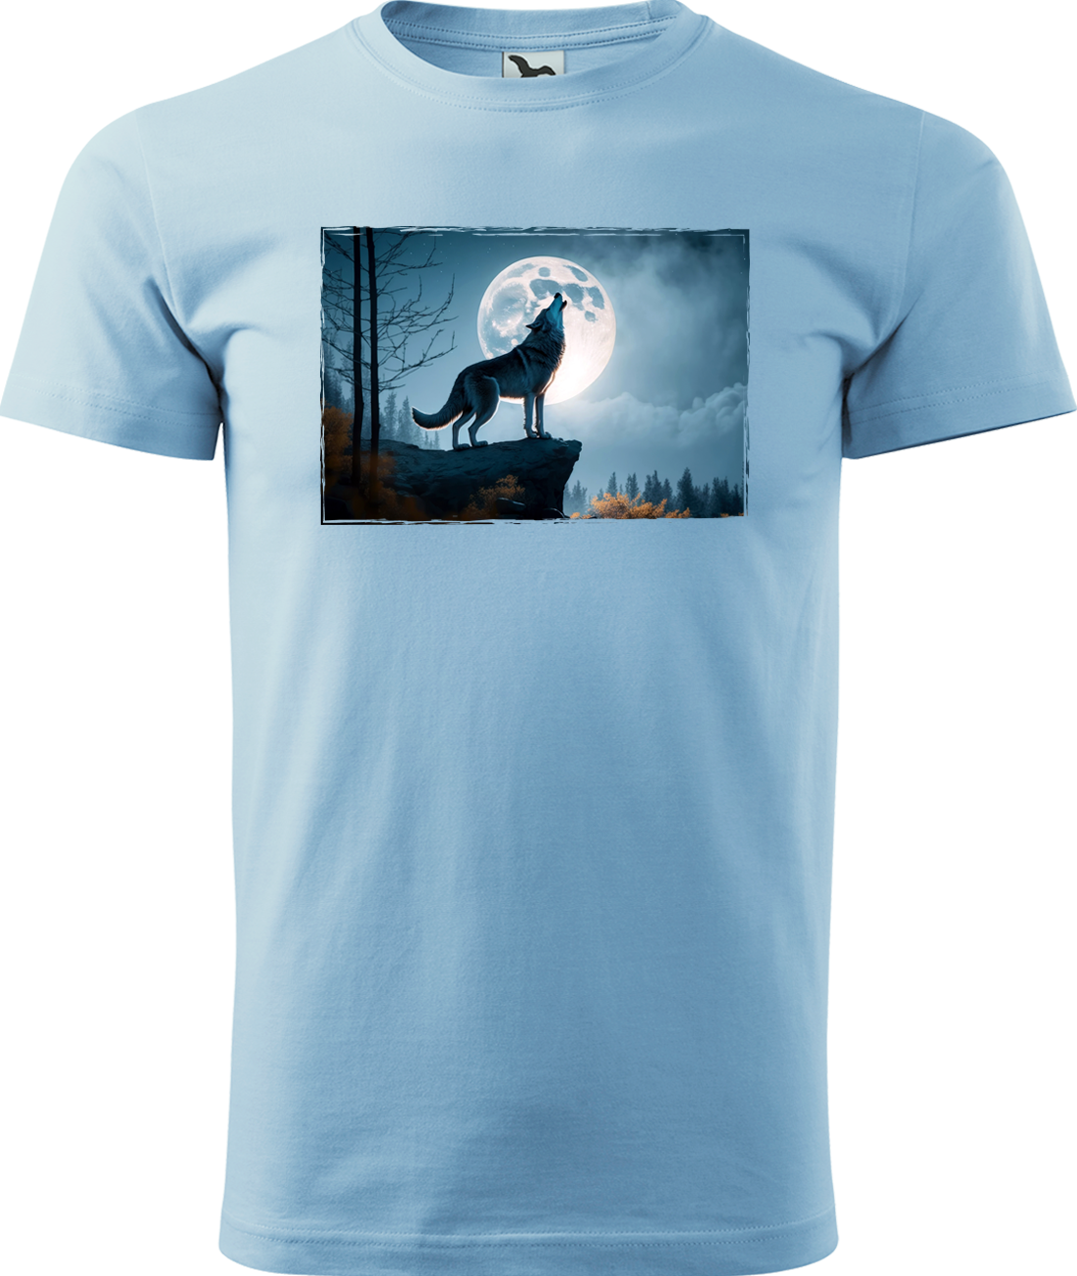 Pánské tričko s vlkem - Vyjící vlk Velikost: S, Barva: Nebesky modrá (15)